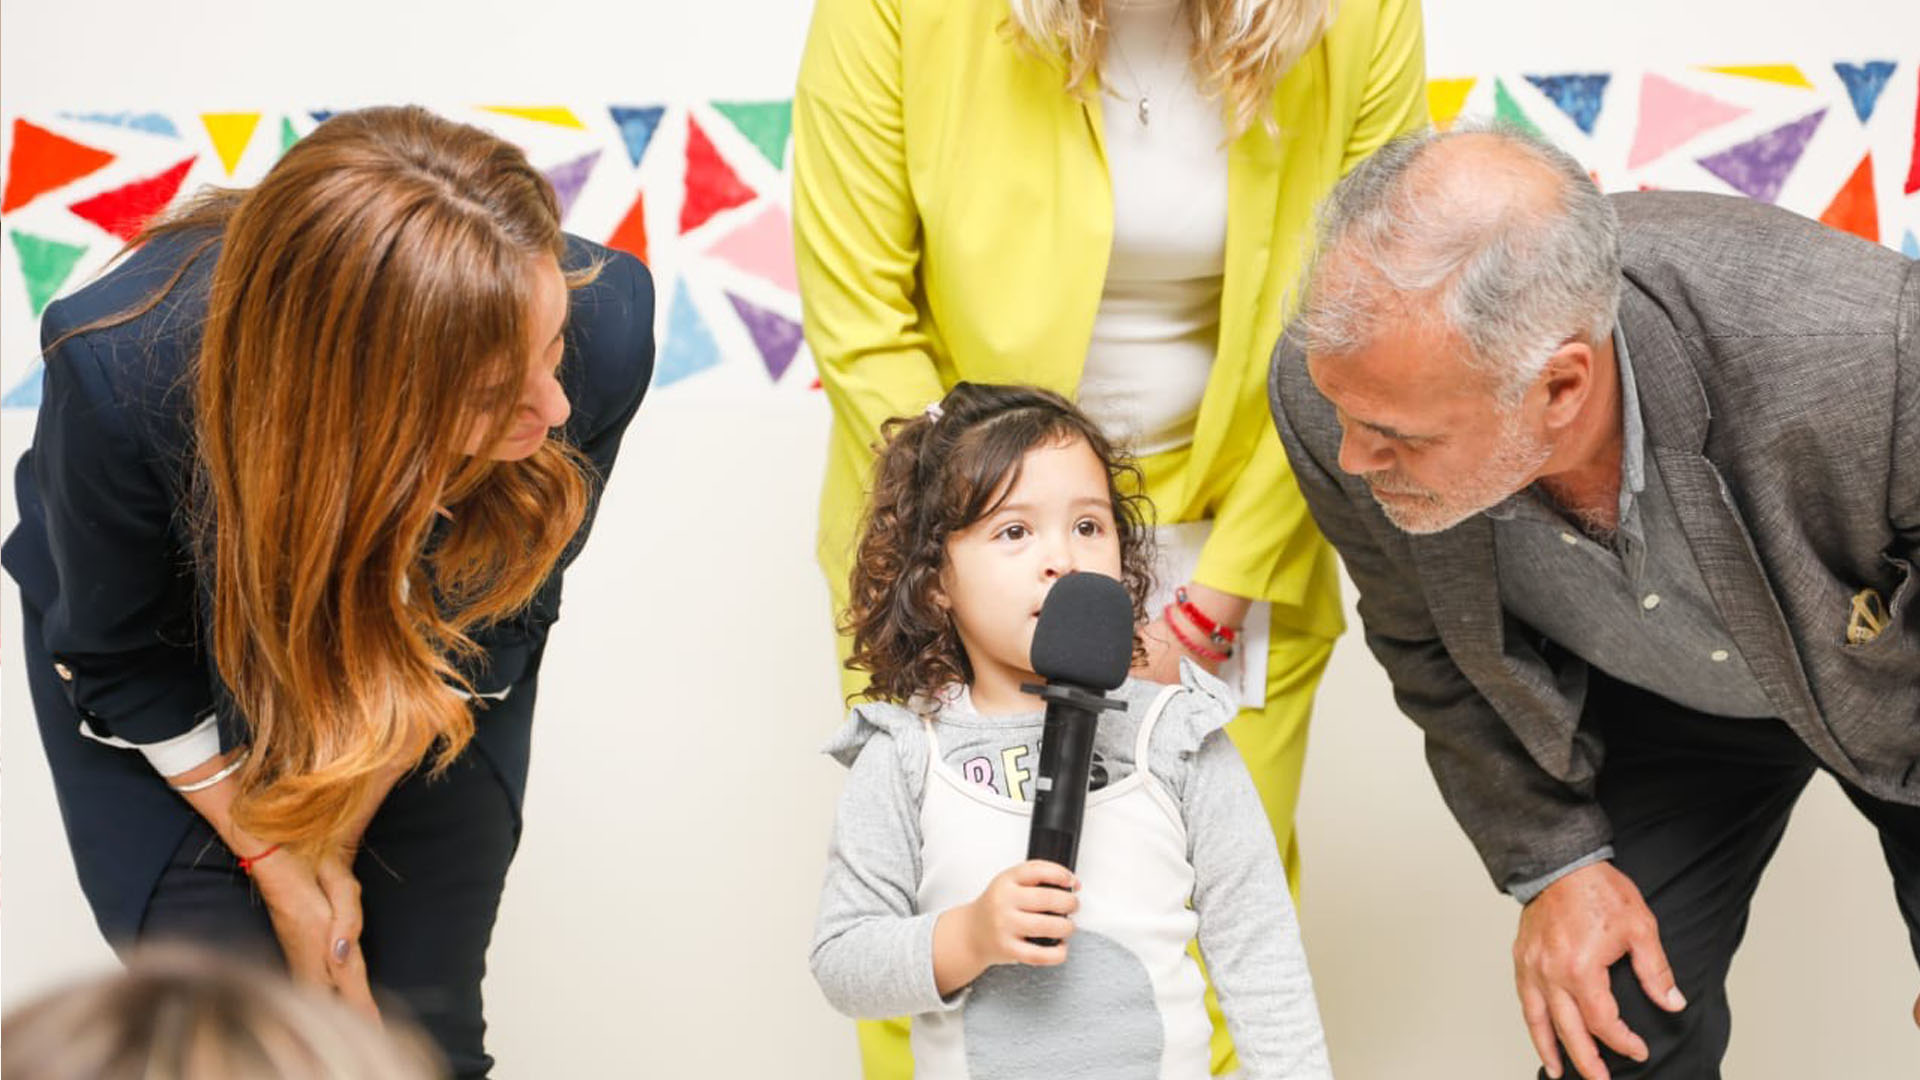 La ministra Tolosa Paz junto al Secretarío de Niñez, Adolescencia y Familia, Gabriel Lerner al lado de una niña pequeña con un micrófono en la mano.